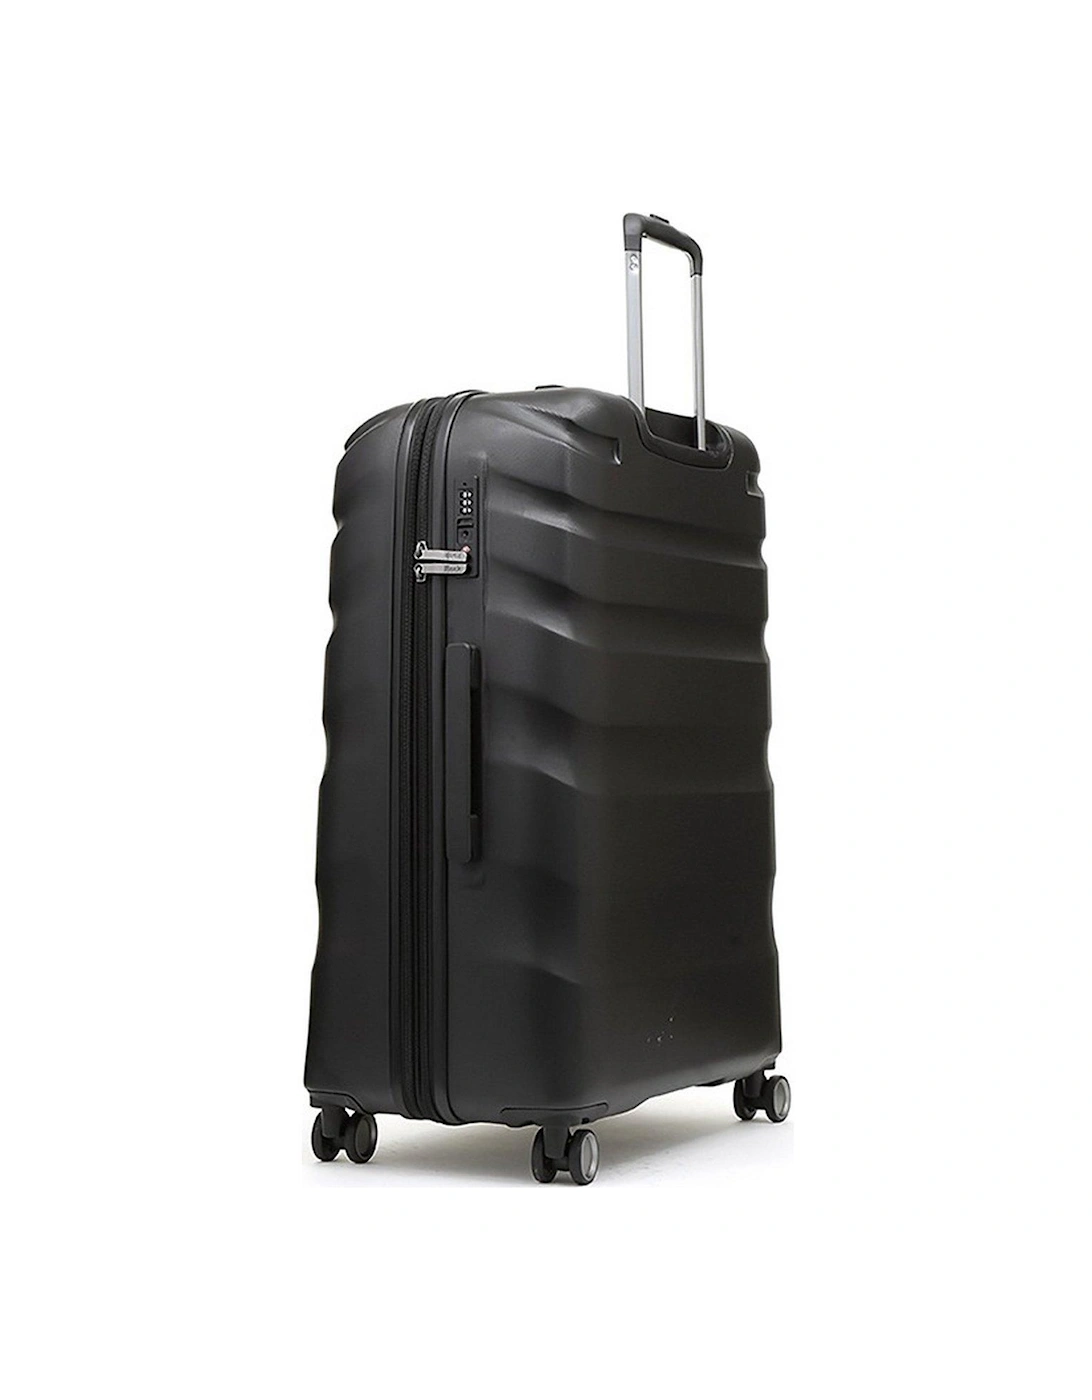 Bali 8 Wheel Hardshell Large Suitcase - Black